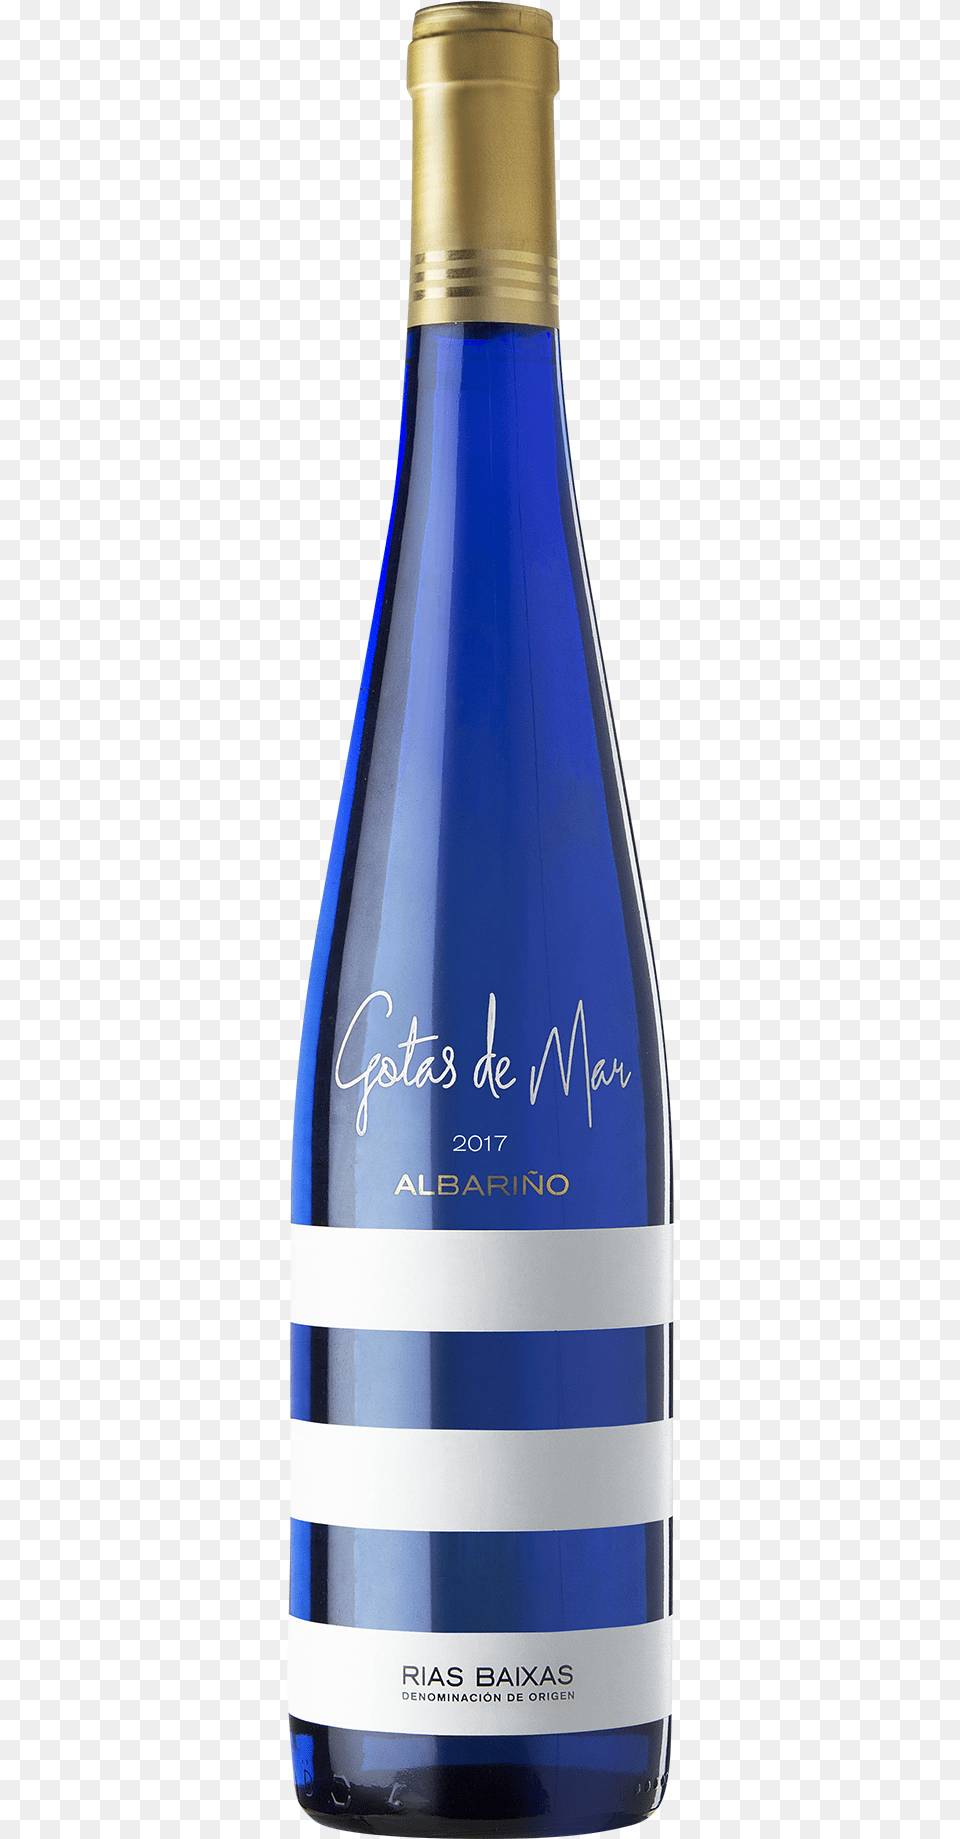 Gotas De Mar Albarino Rias Baixas, Alcohol, Beverage, Bottle, Sake Free Transparent Png